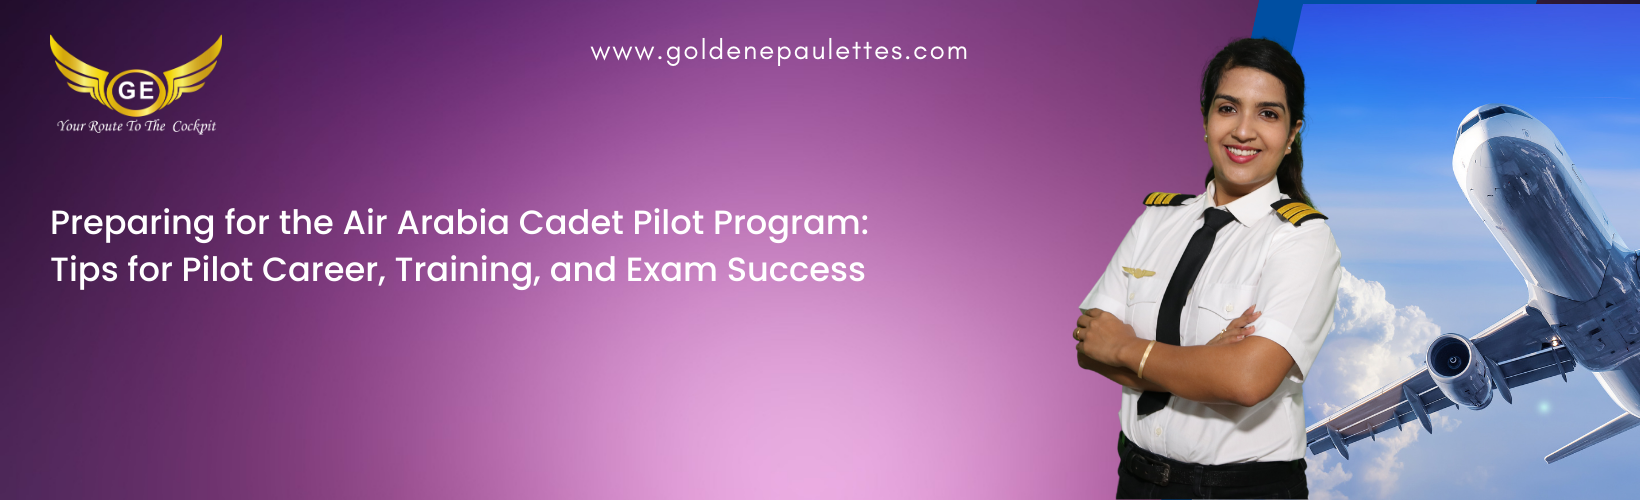 The Air Arabia Cadet Pilot Program Curriculum